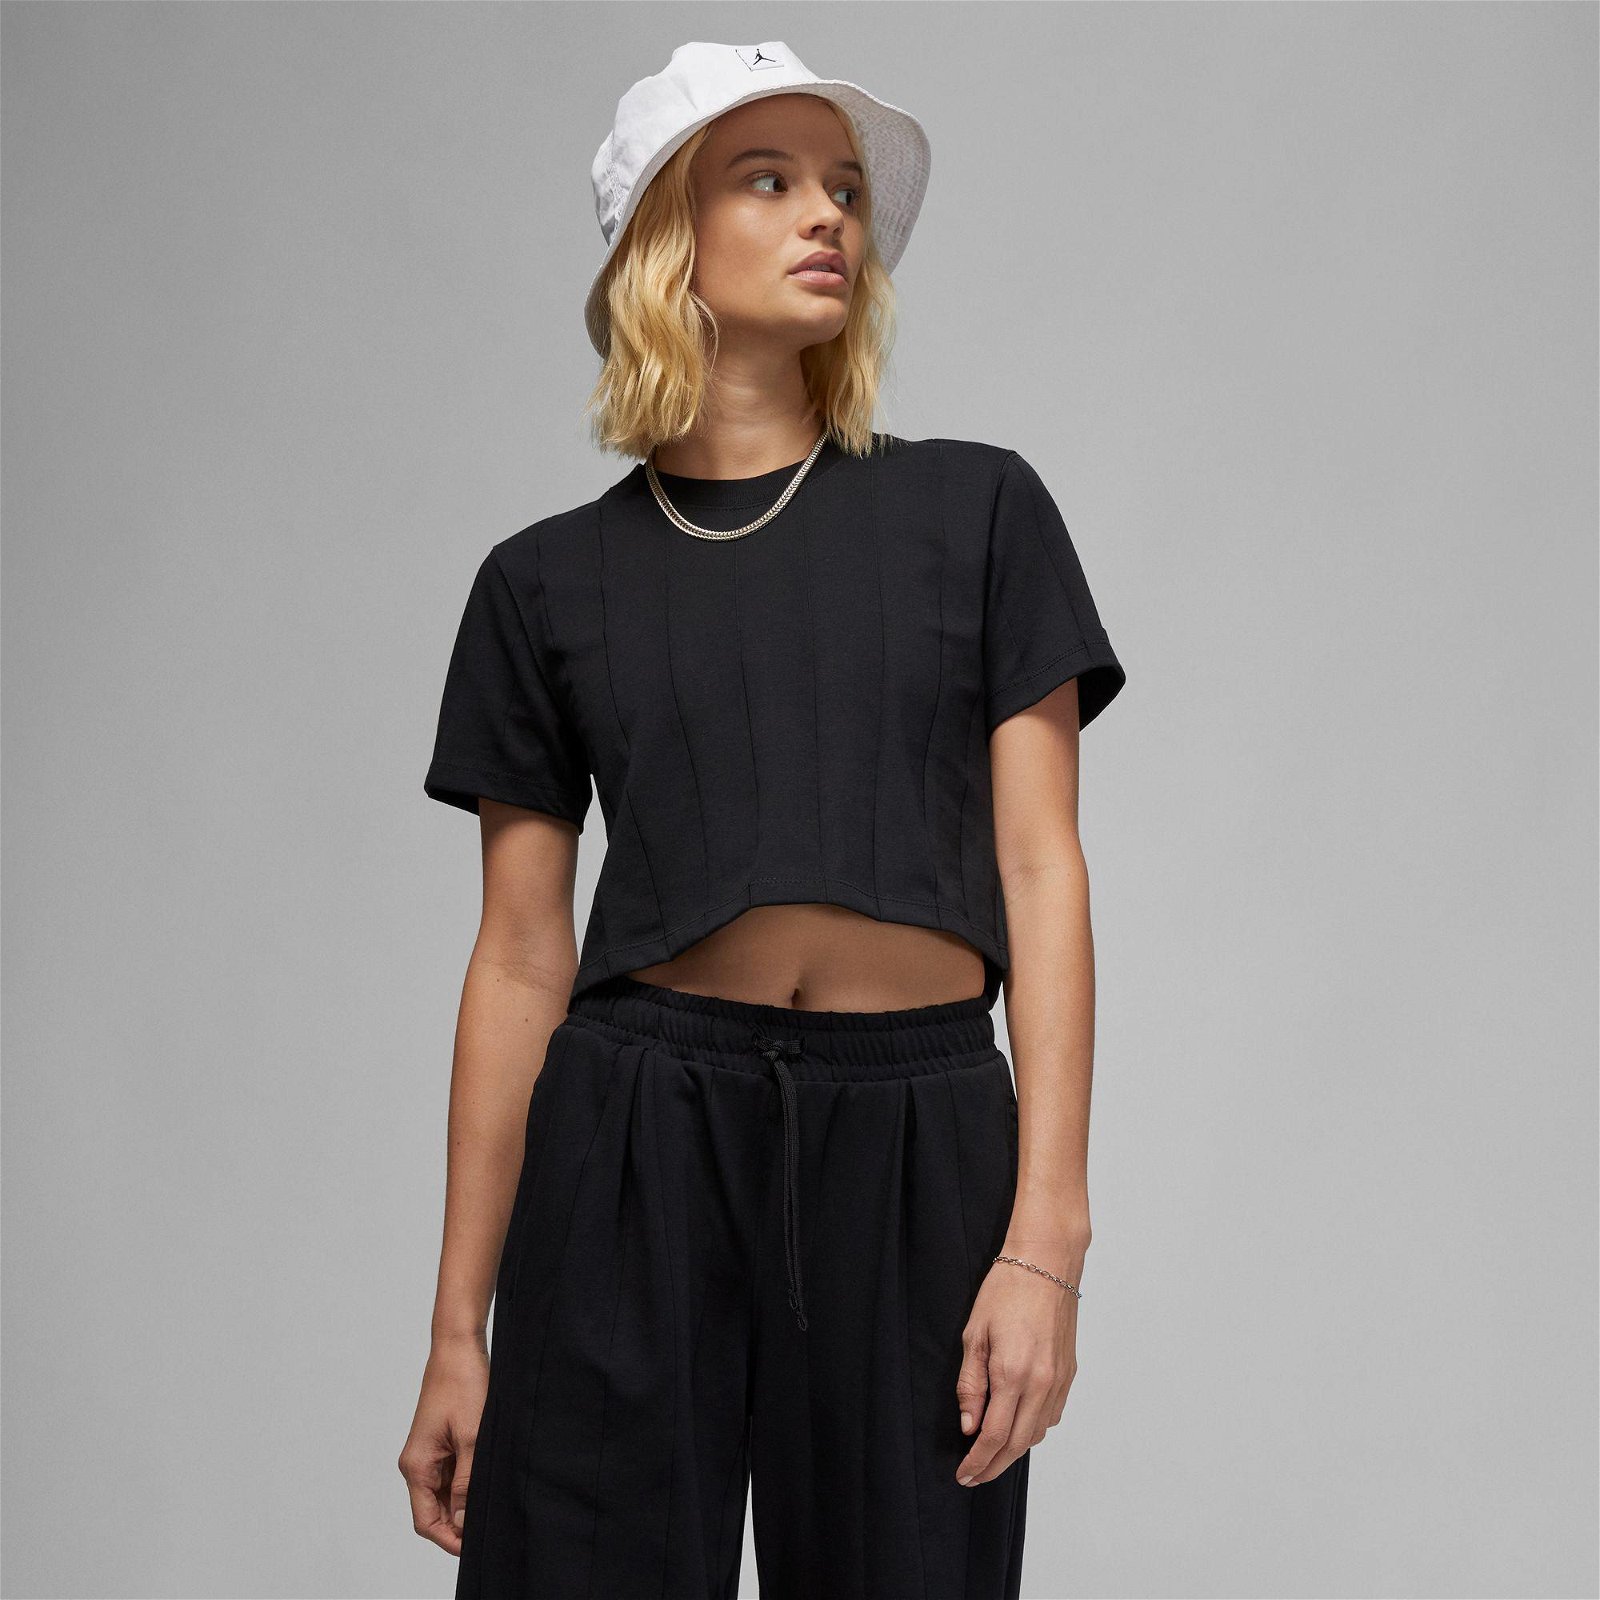 Jordan Knit Top Kadın Siyah T-Shirt